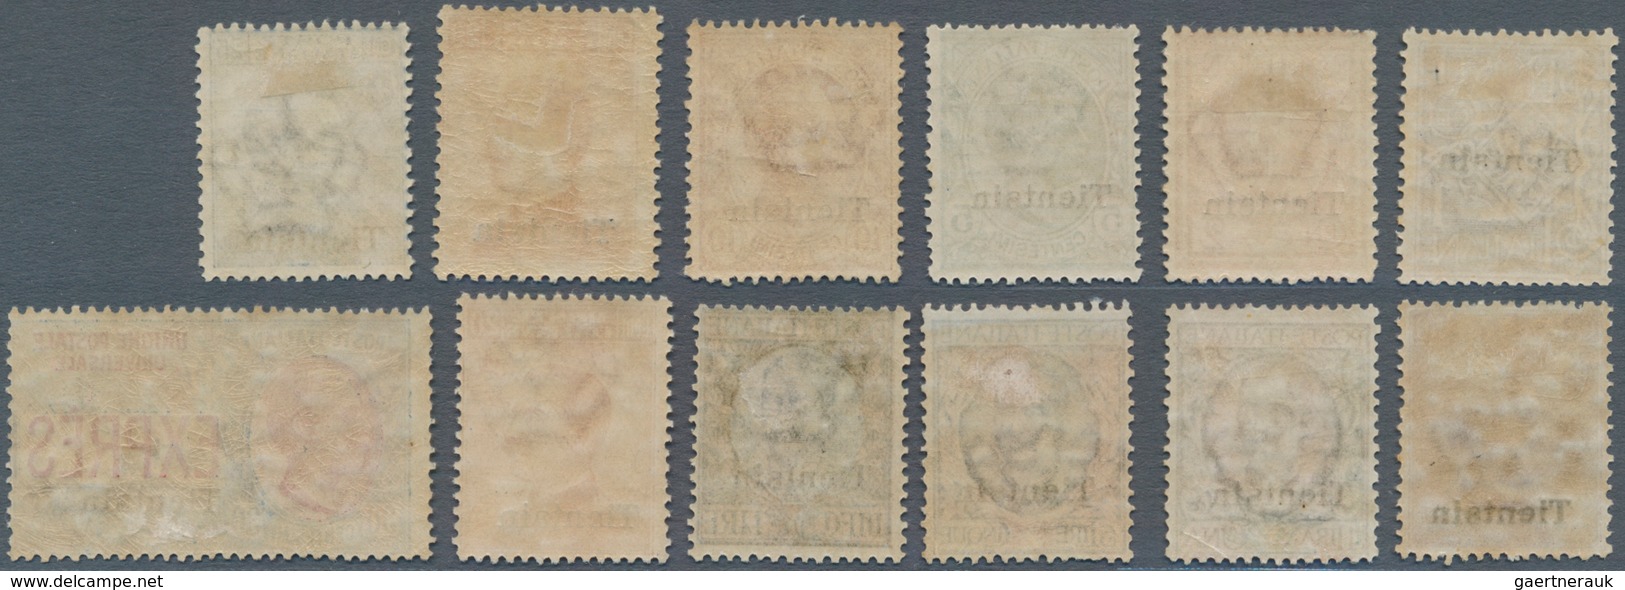 Italienische Post In China: 1917/1918, "Tientsin" Overprints, 1c. To 10l. And 30c. Express Stamp, Se - Tientsin